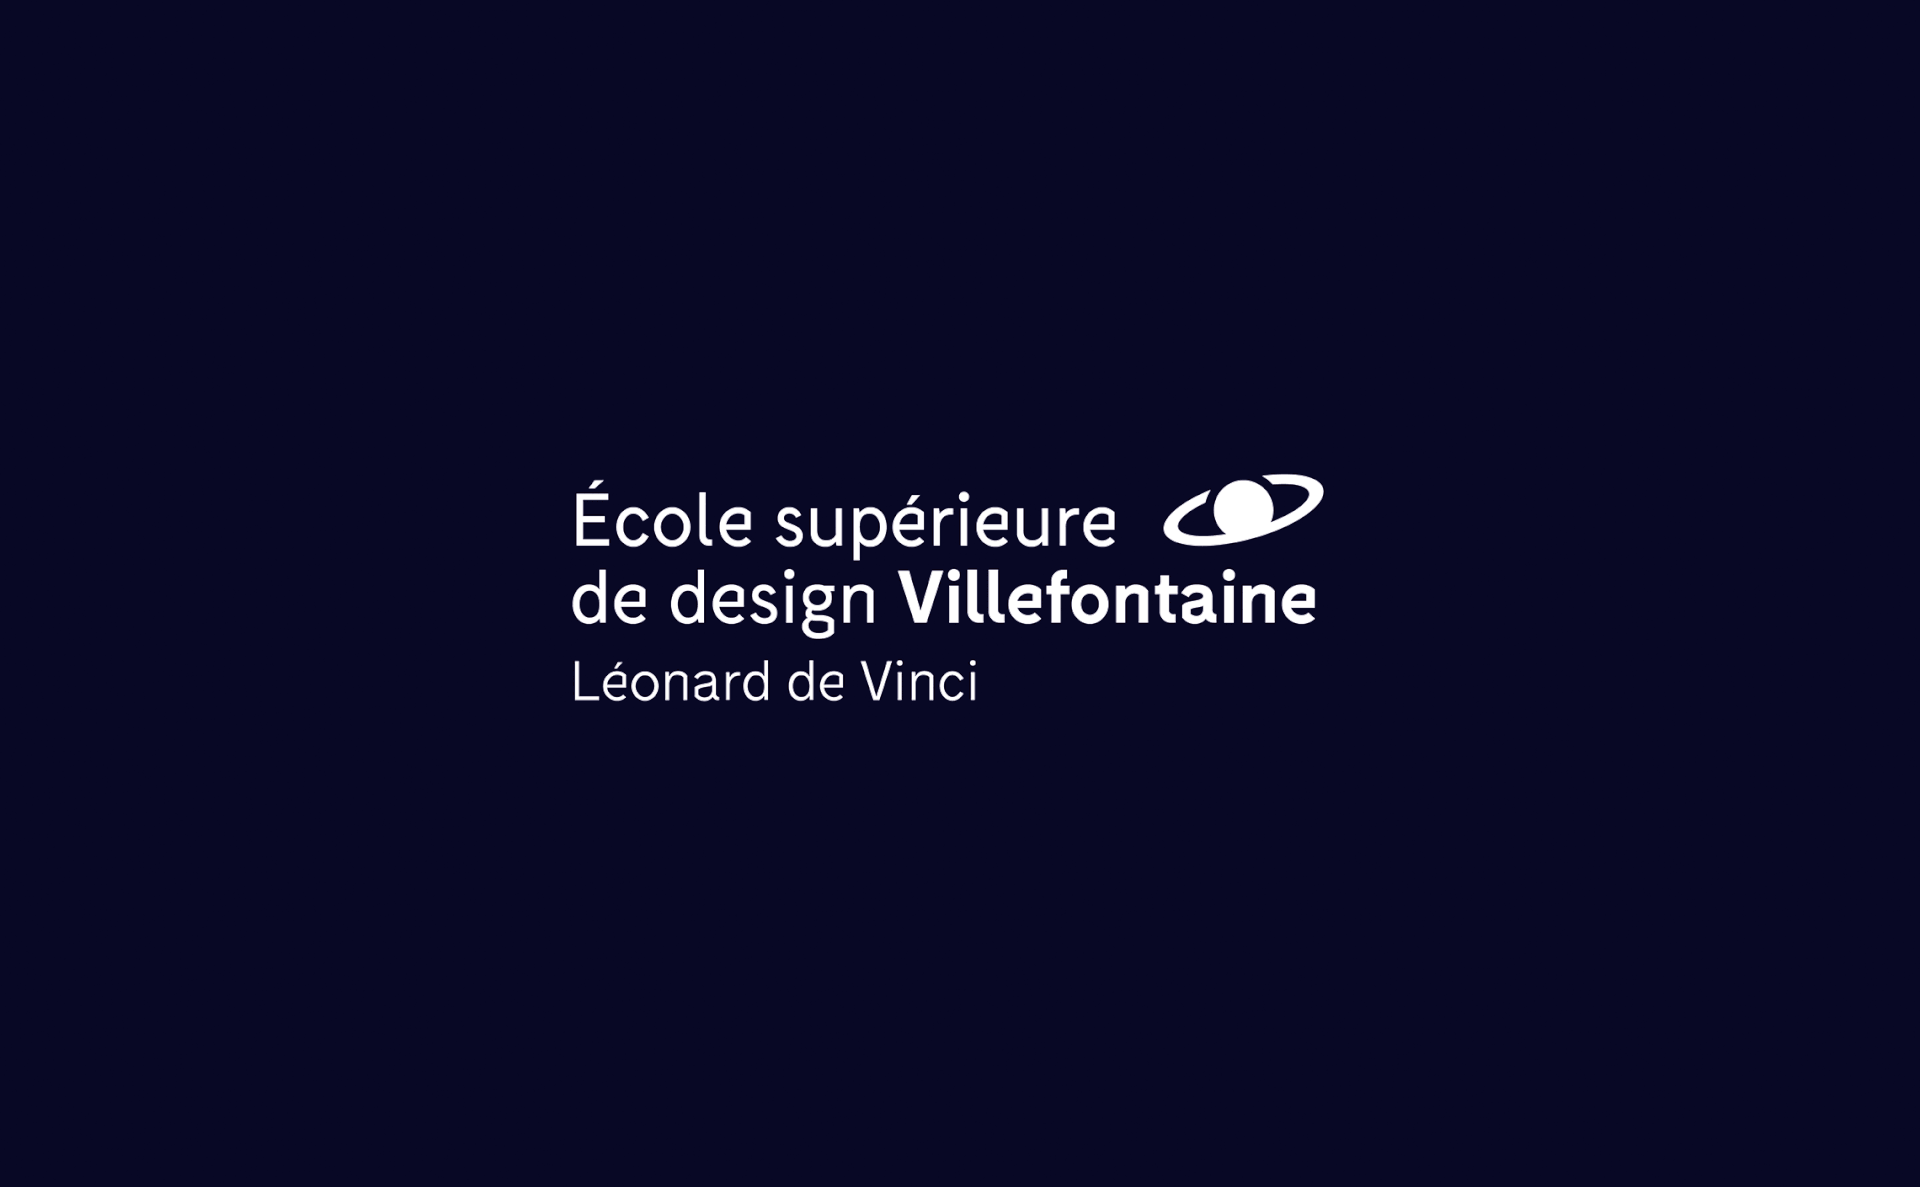 Villefontaine设计学院视觉形象